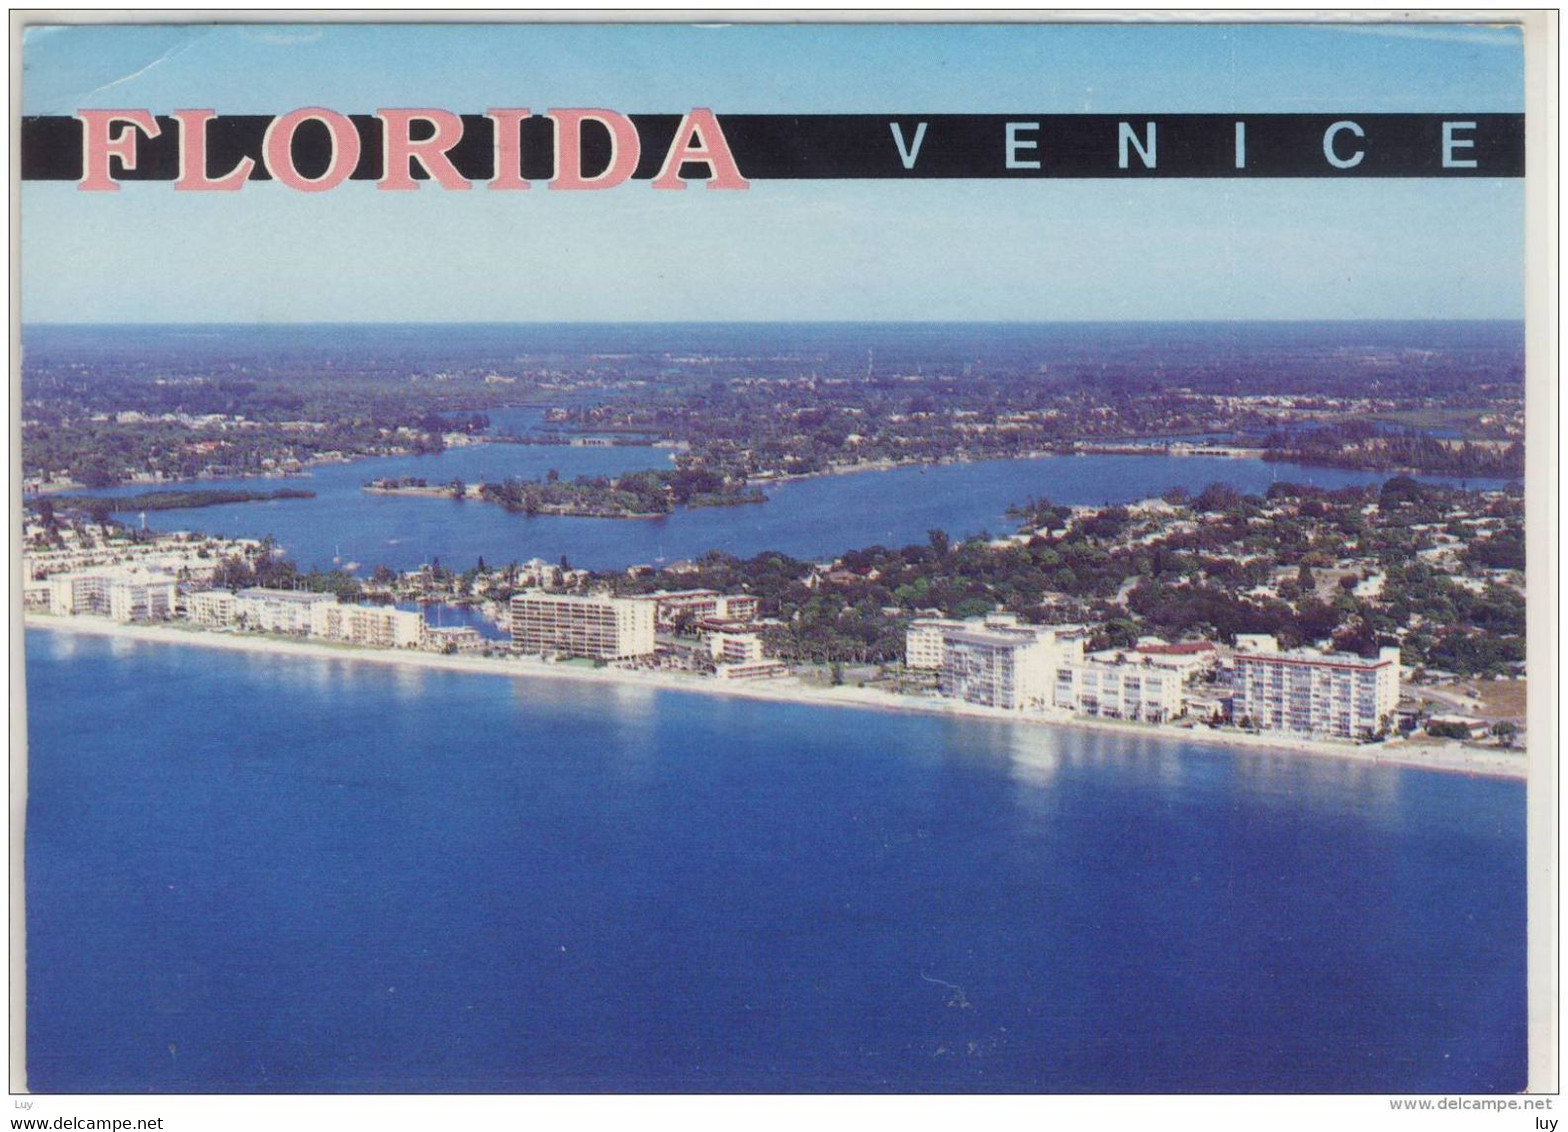 VENICE FLORIDA  ON THE BEAUTIFUL GOLD COAST - Venice